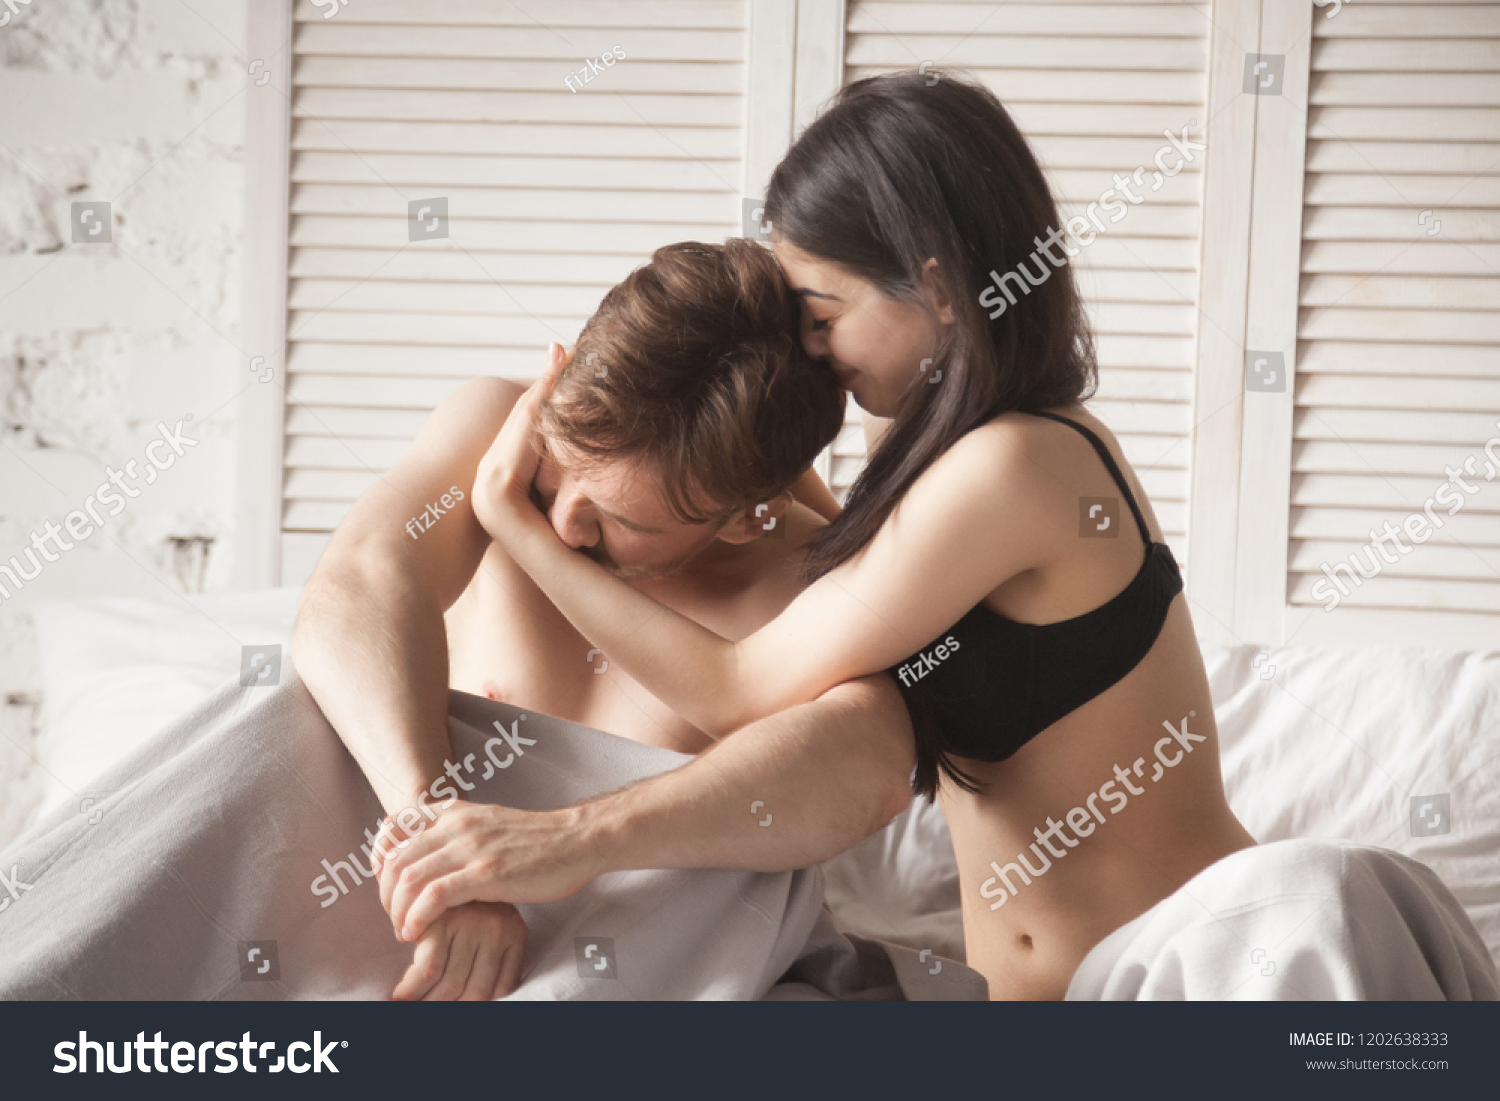 На фото голая пара молодых девушек